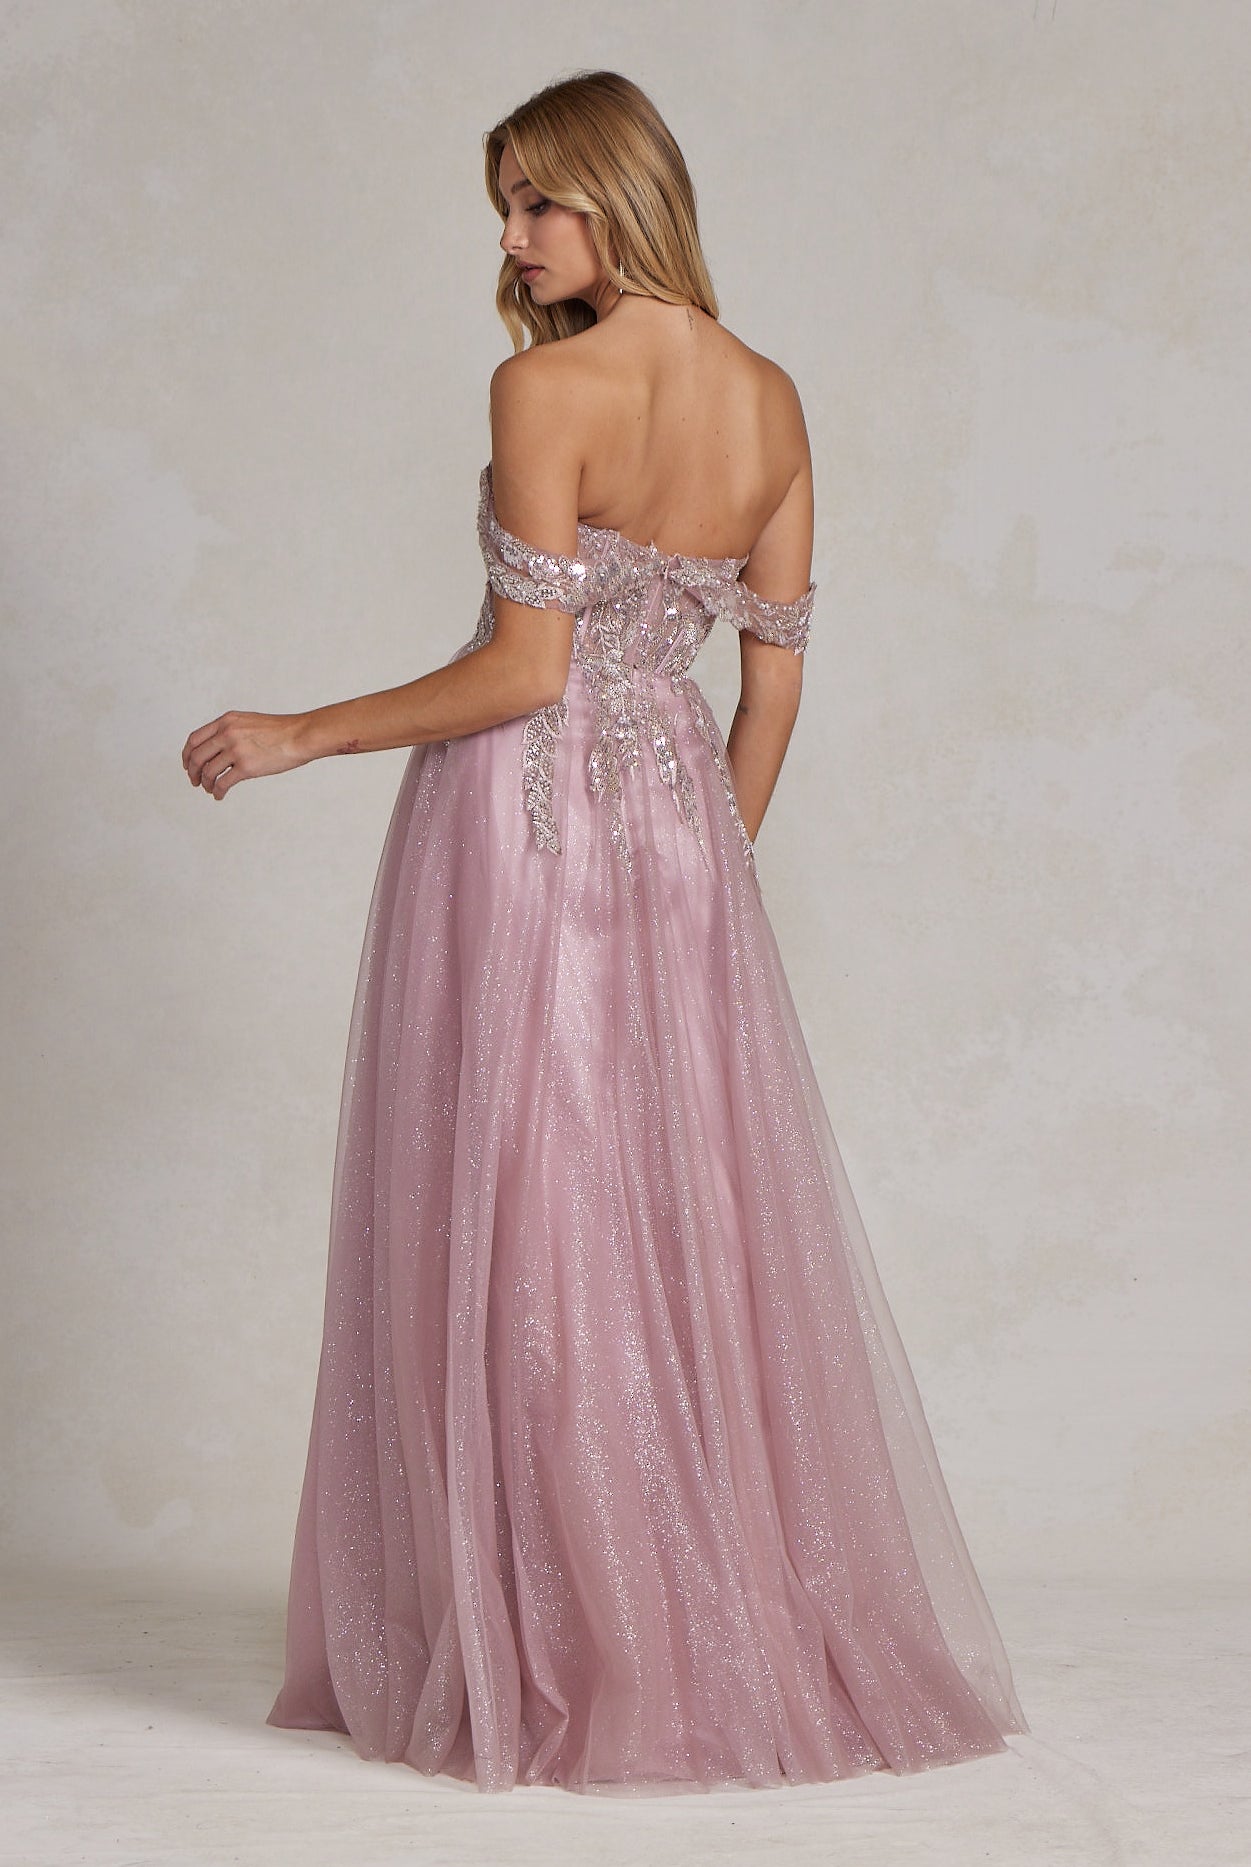 Off Shoulder Side Slit A-Line Tulle Skirt Long Prom Dress NXE1128-Prom Dress-smcfashion.com